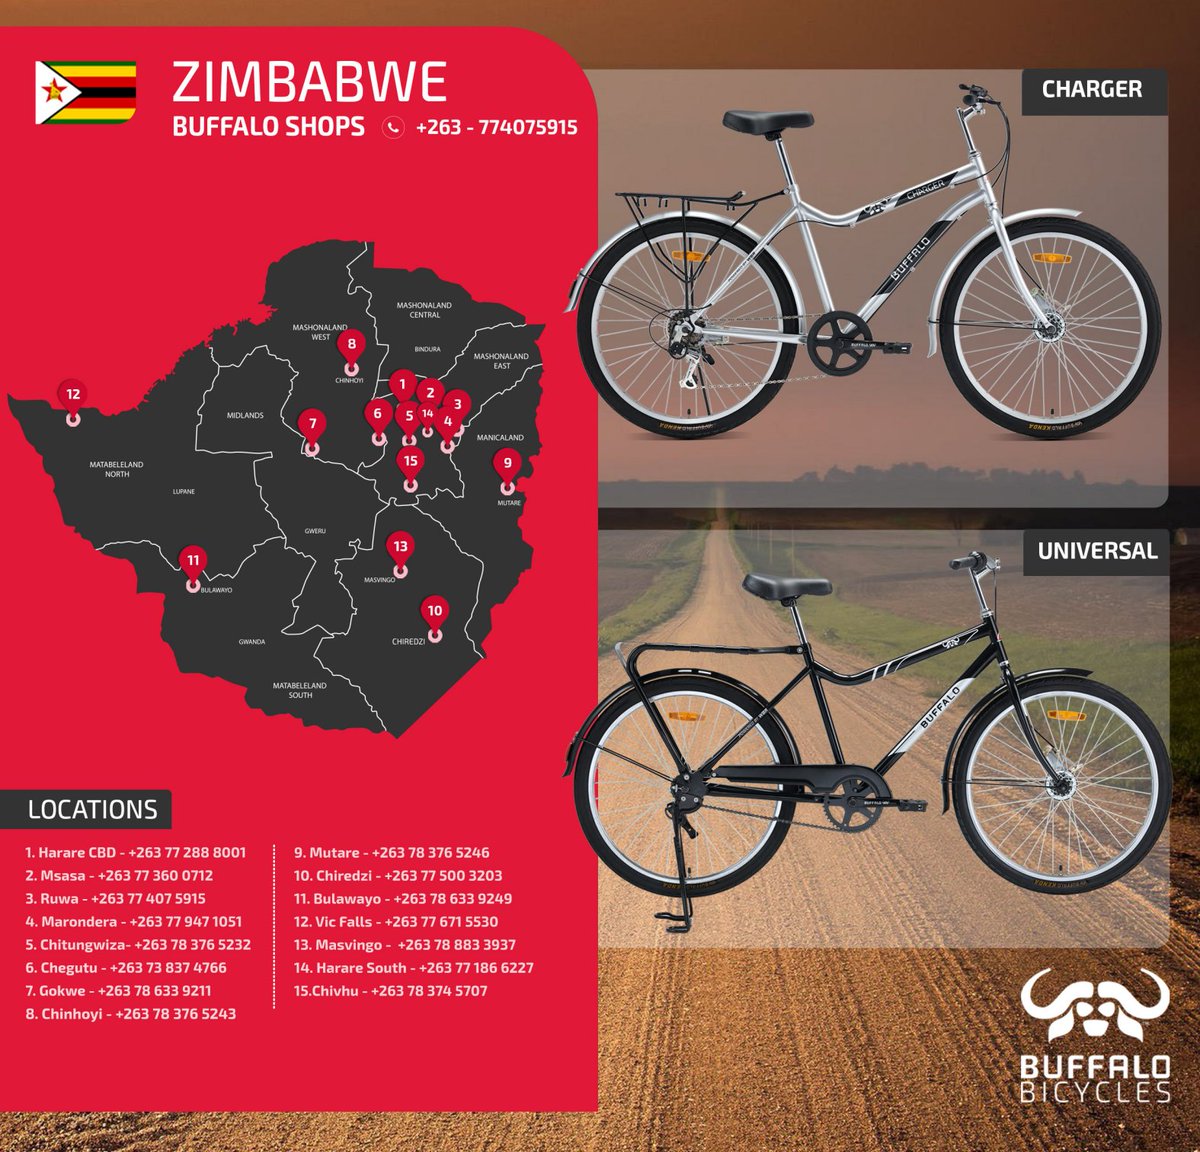 @PowerOfBicycles Zimbabwe  Buffalo Bicycles Shops
#bicycle #changeacommunity #highterrain #powerofbicycles #changewhatspossible   #ChangeWhatYouCan #gamechanger #twowheels #powertotransformlife #bicyclesandfreedom #buynow